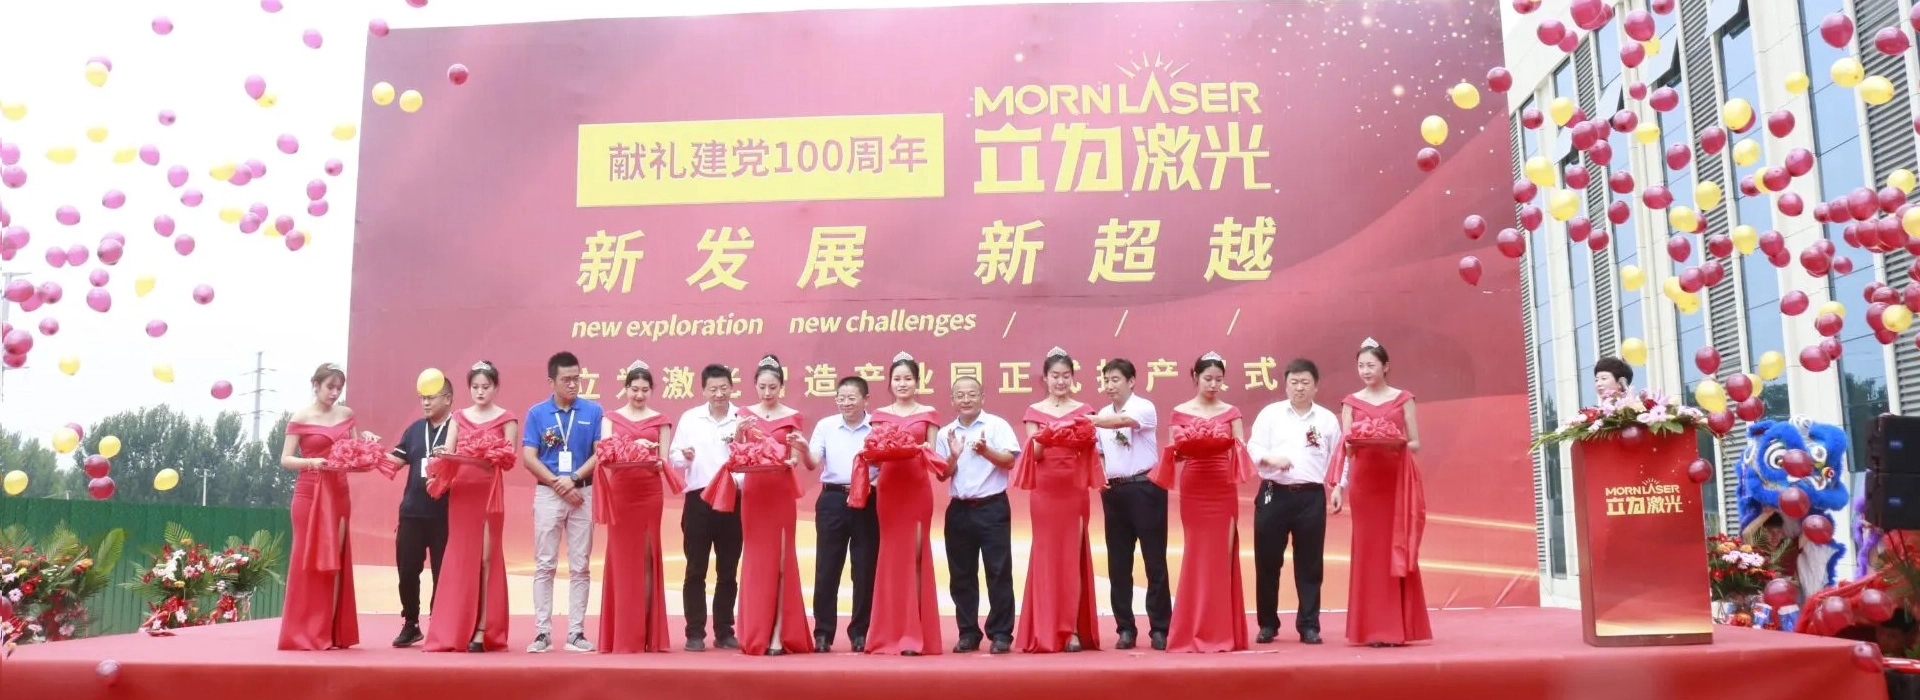 Индустриальный парк Morn Laser Smart Manufacturing официально введен в эксплуатацию